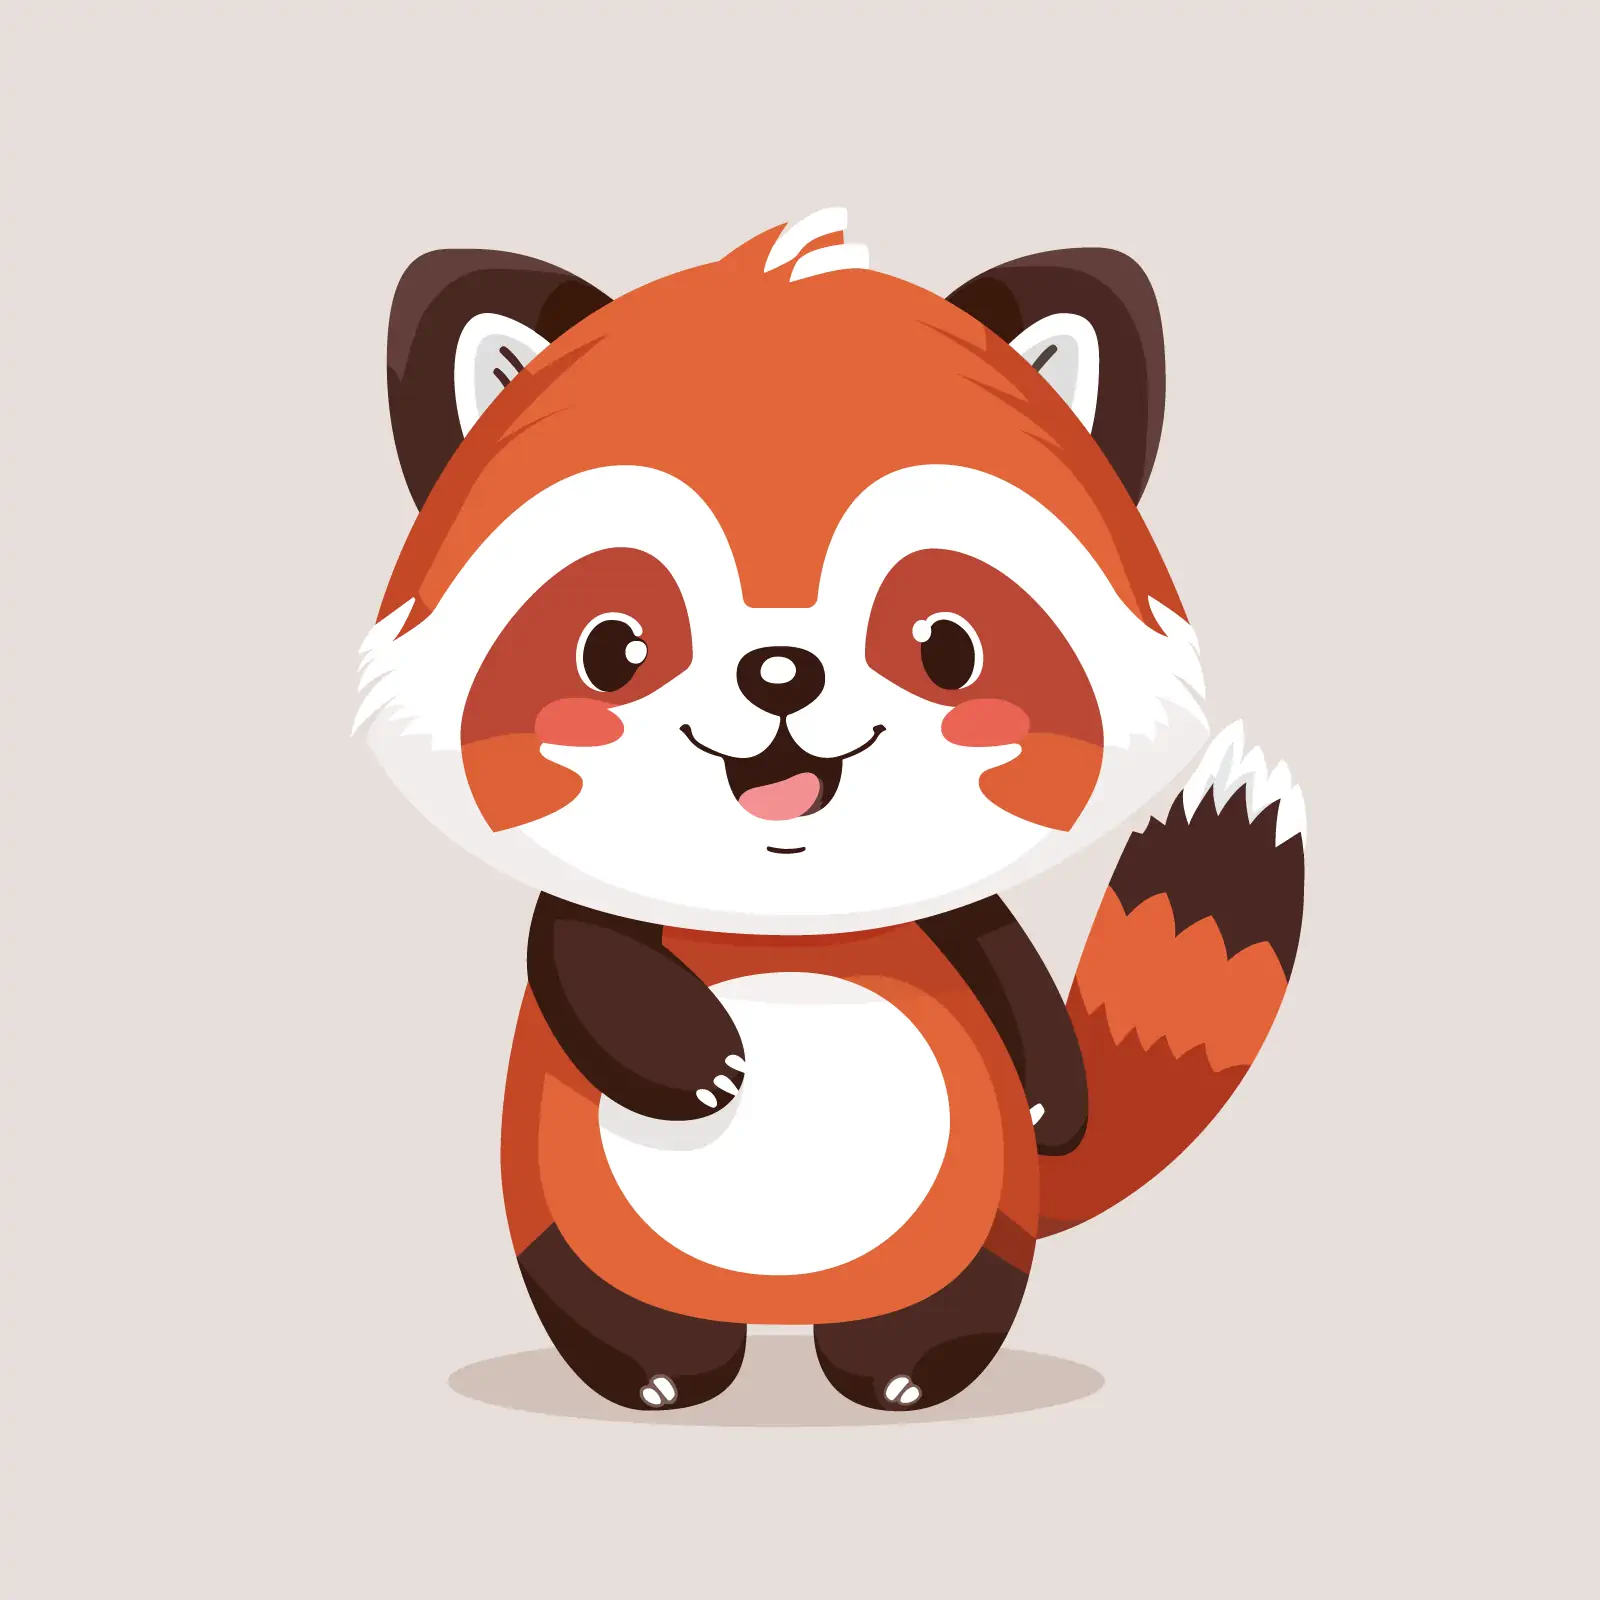 Cute happy red panda mascot